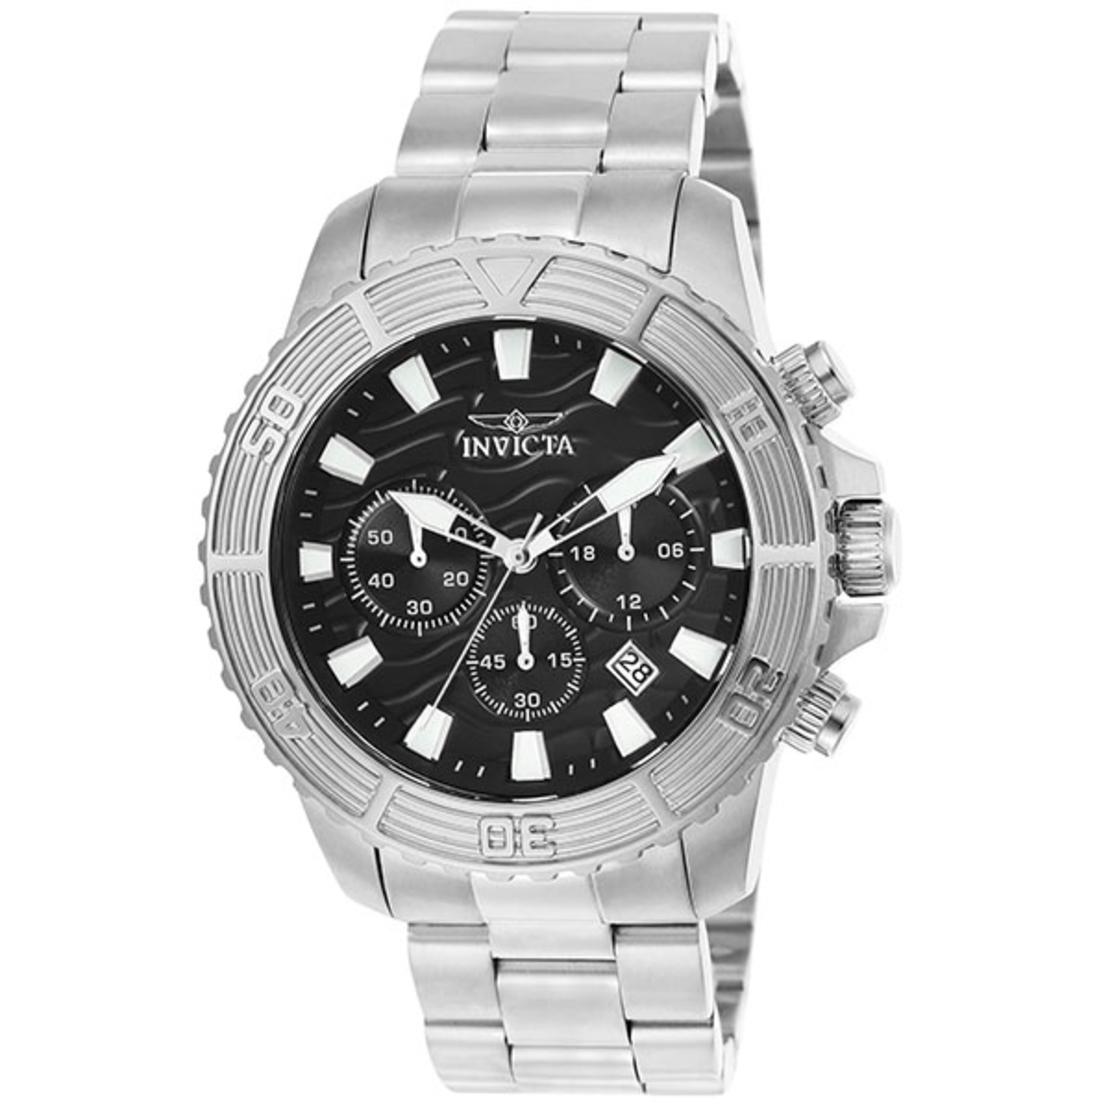 Мужские часы Invicta Pro Diver, модель 23998